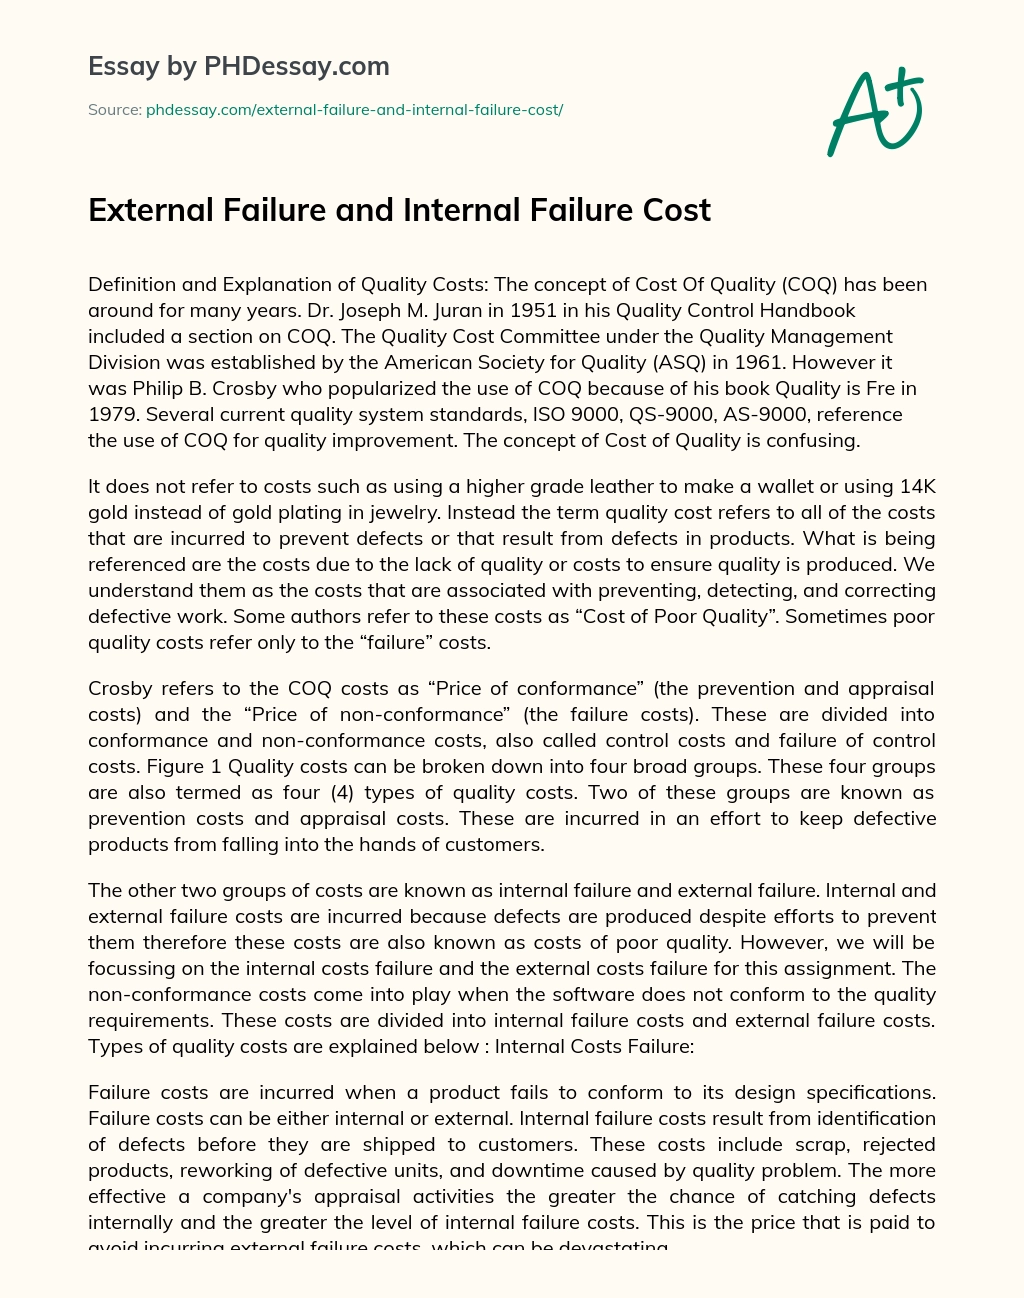 External Failure and Internal Failure Cost essay